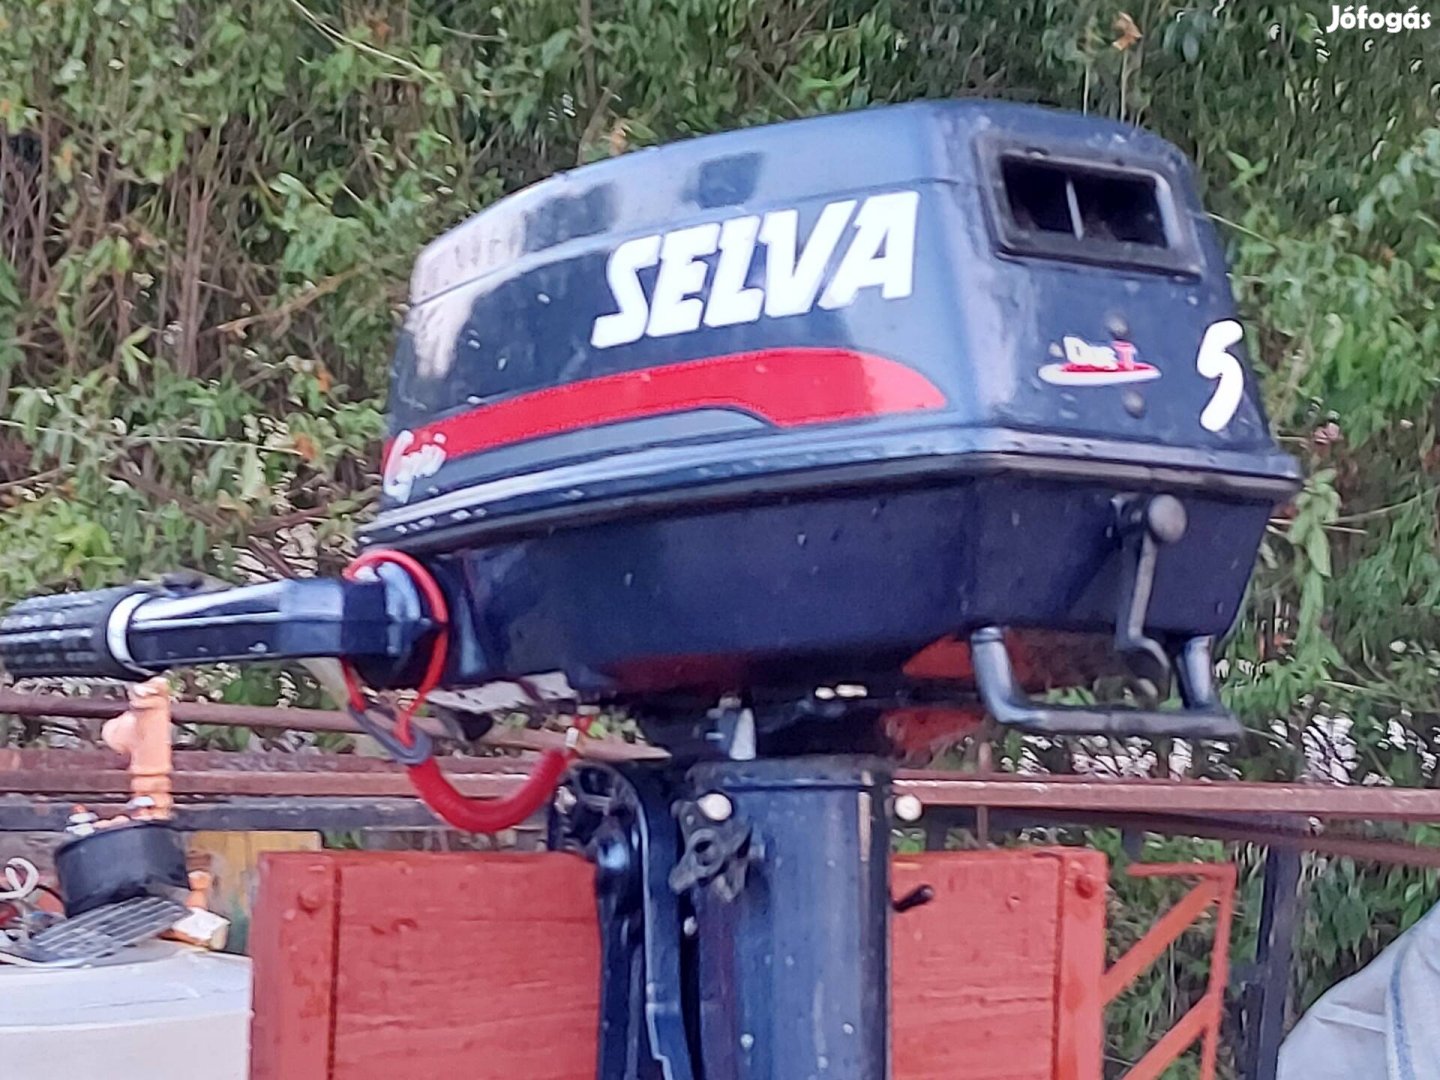 Selva csónak motor újszerű állapotban 